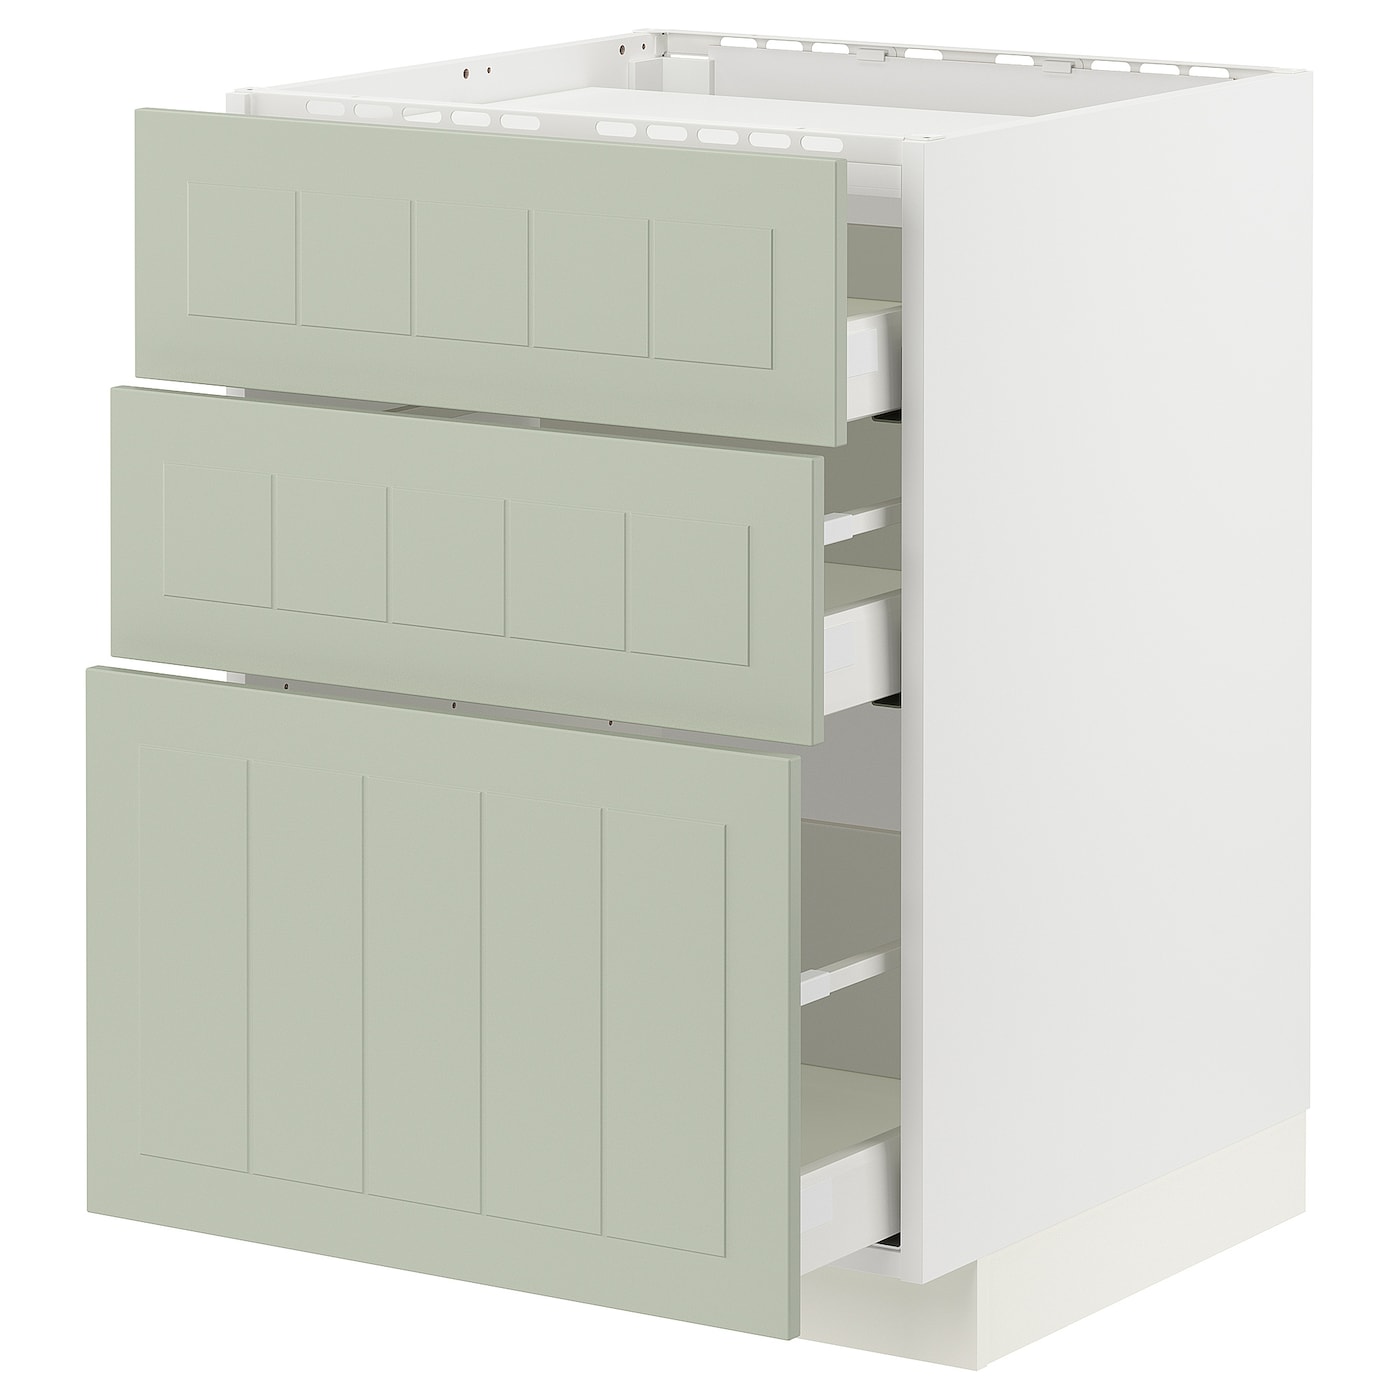 Напольный кухонный шкаф  - IKEA METOD MAXIMERA, 88x62x60см, белый/светло-зеленый, МЕТОД МАКСИМЕРА ИКЕА